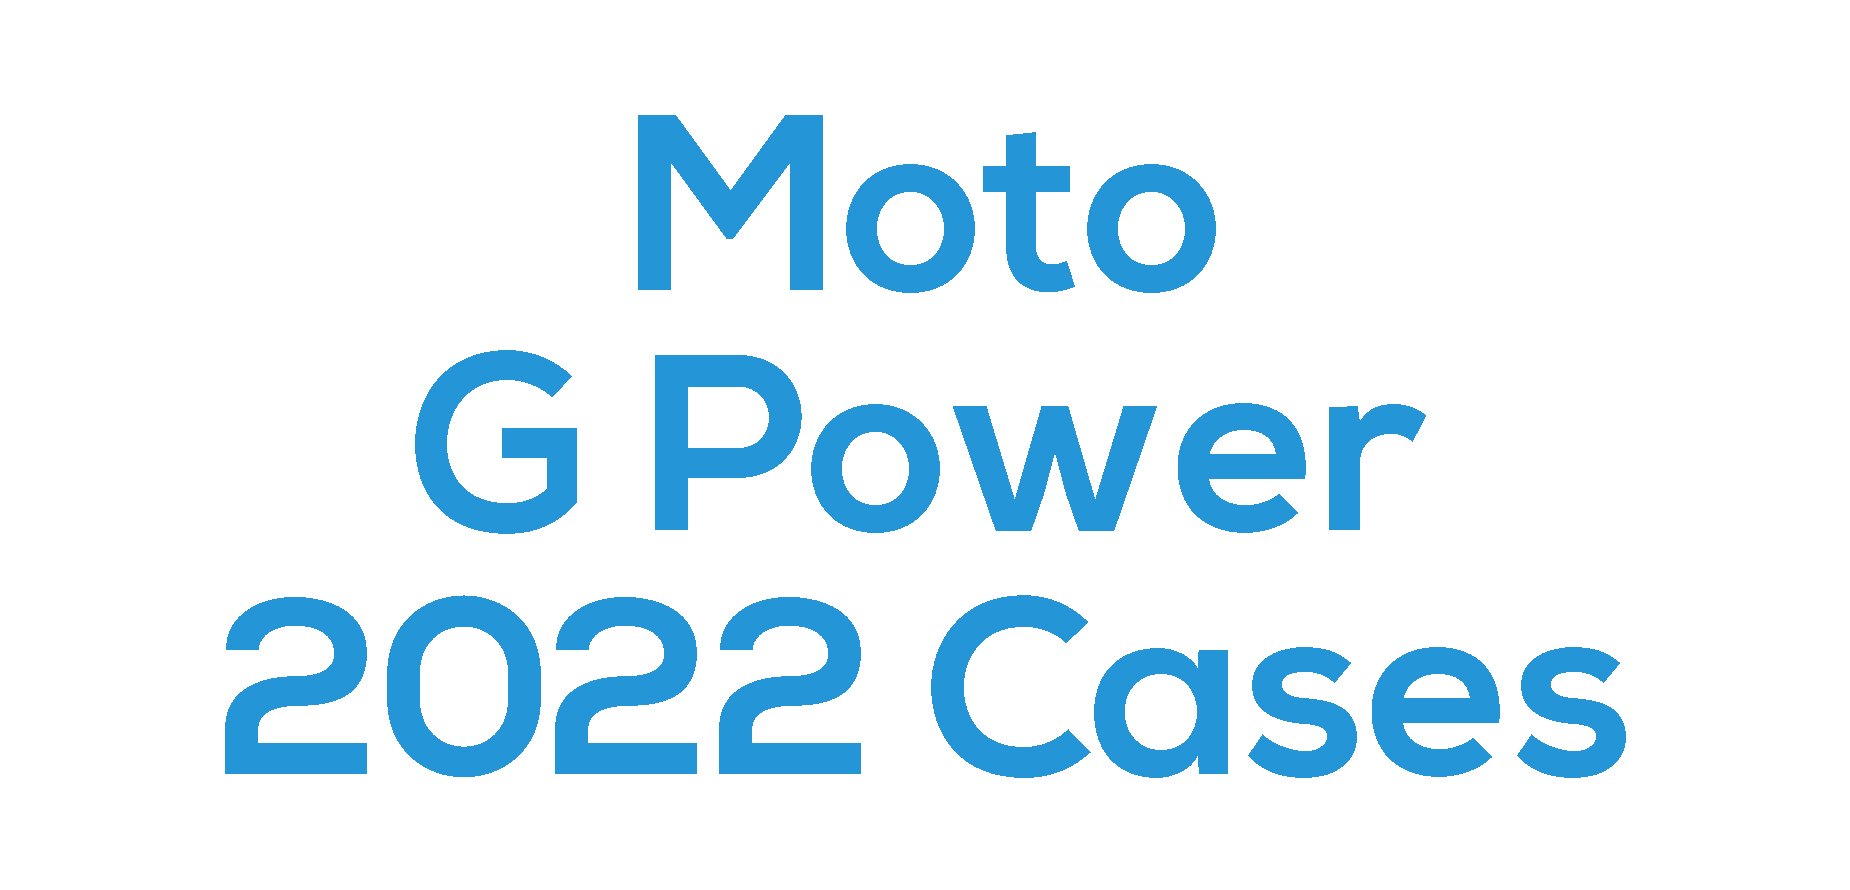 Moto G Power 2022 Cases